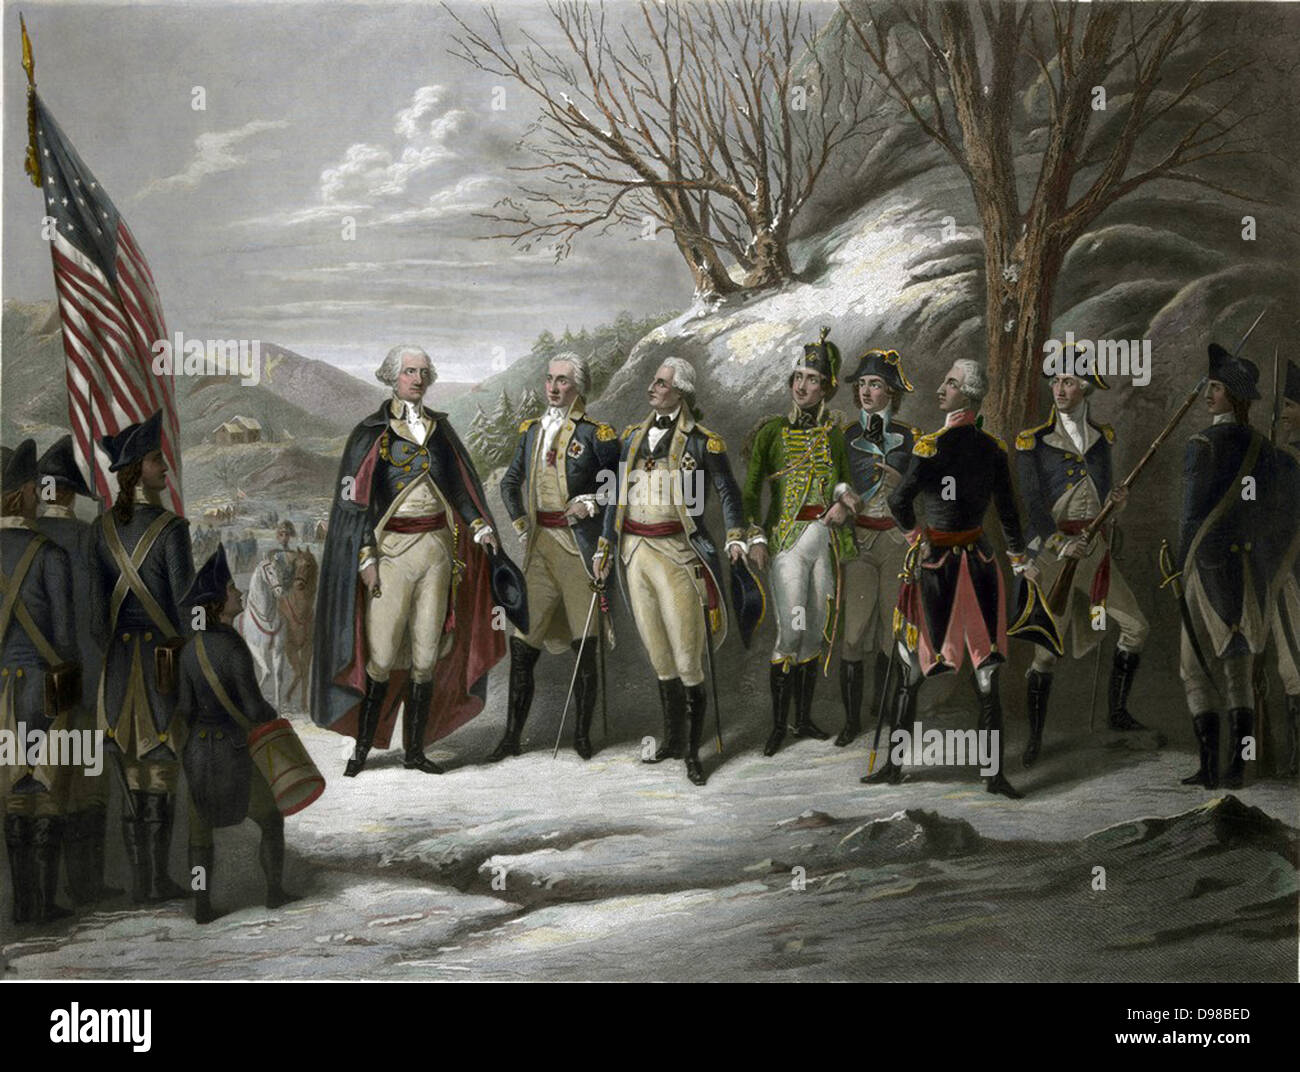 La guerre révolutionnaire de 1775-1783 (Guerre d'Indépendance américaine) : George Washington, à gauche, avec les autres officiers y compris De Kalb, le Von Steuben, Pulaski, Kosciouszko, Lafayette et petite. Impression couleur de Frederick Girsch (1821-1895). Banque D'Images